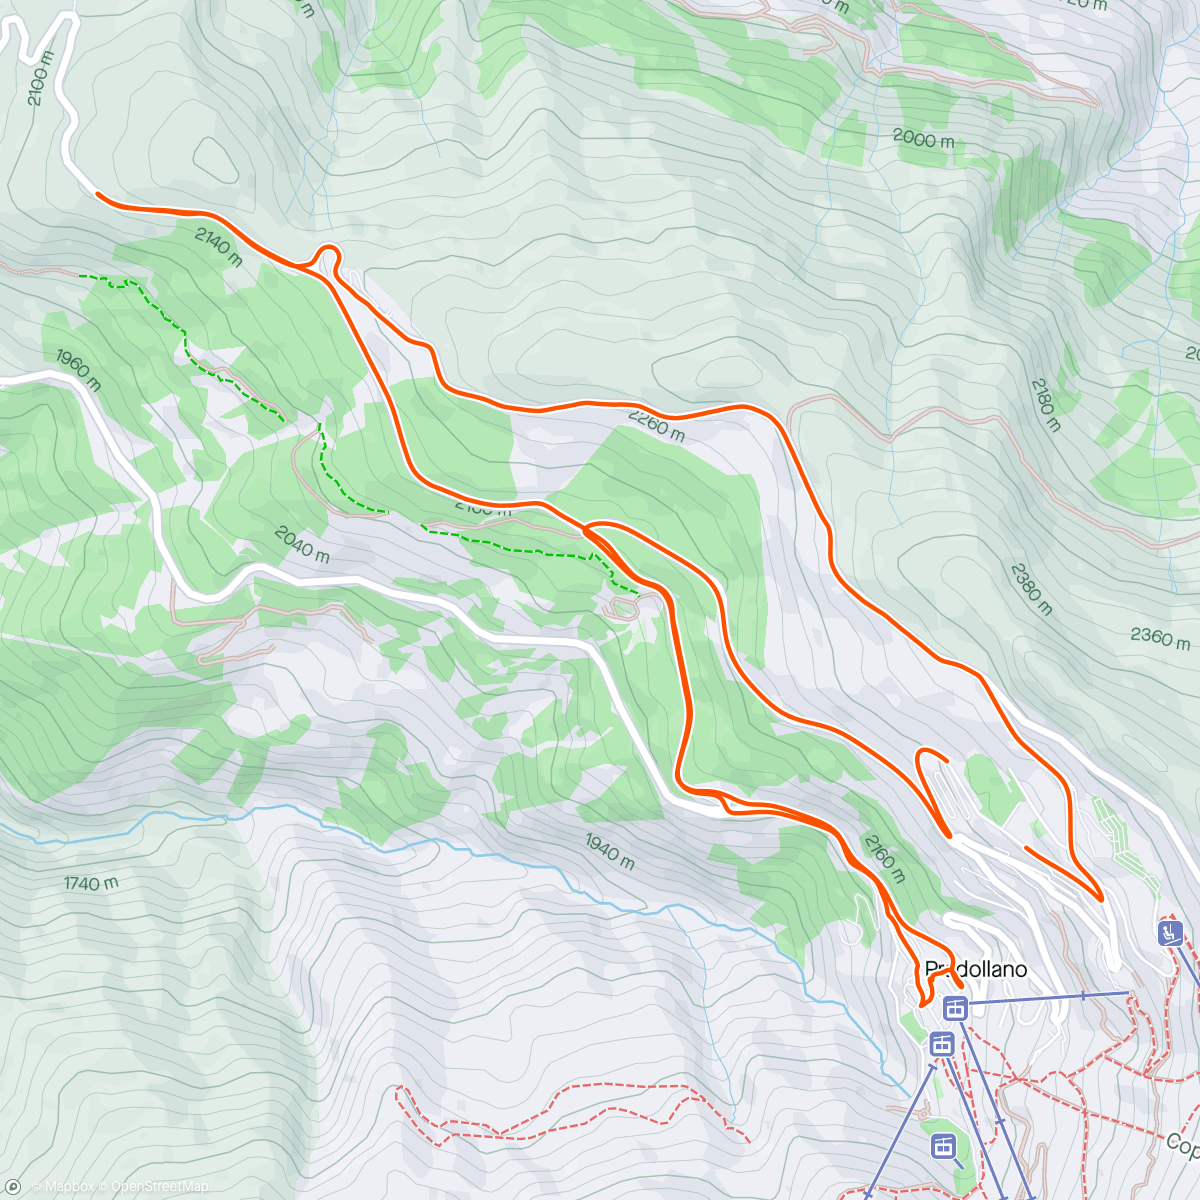 「Sierra Nevada T4 restday」活動的地圖